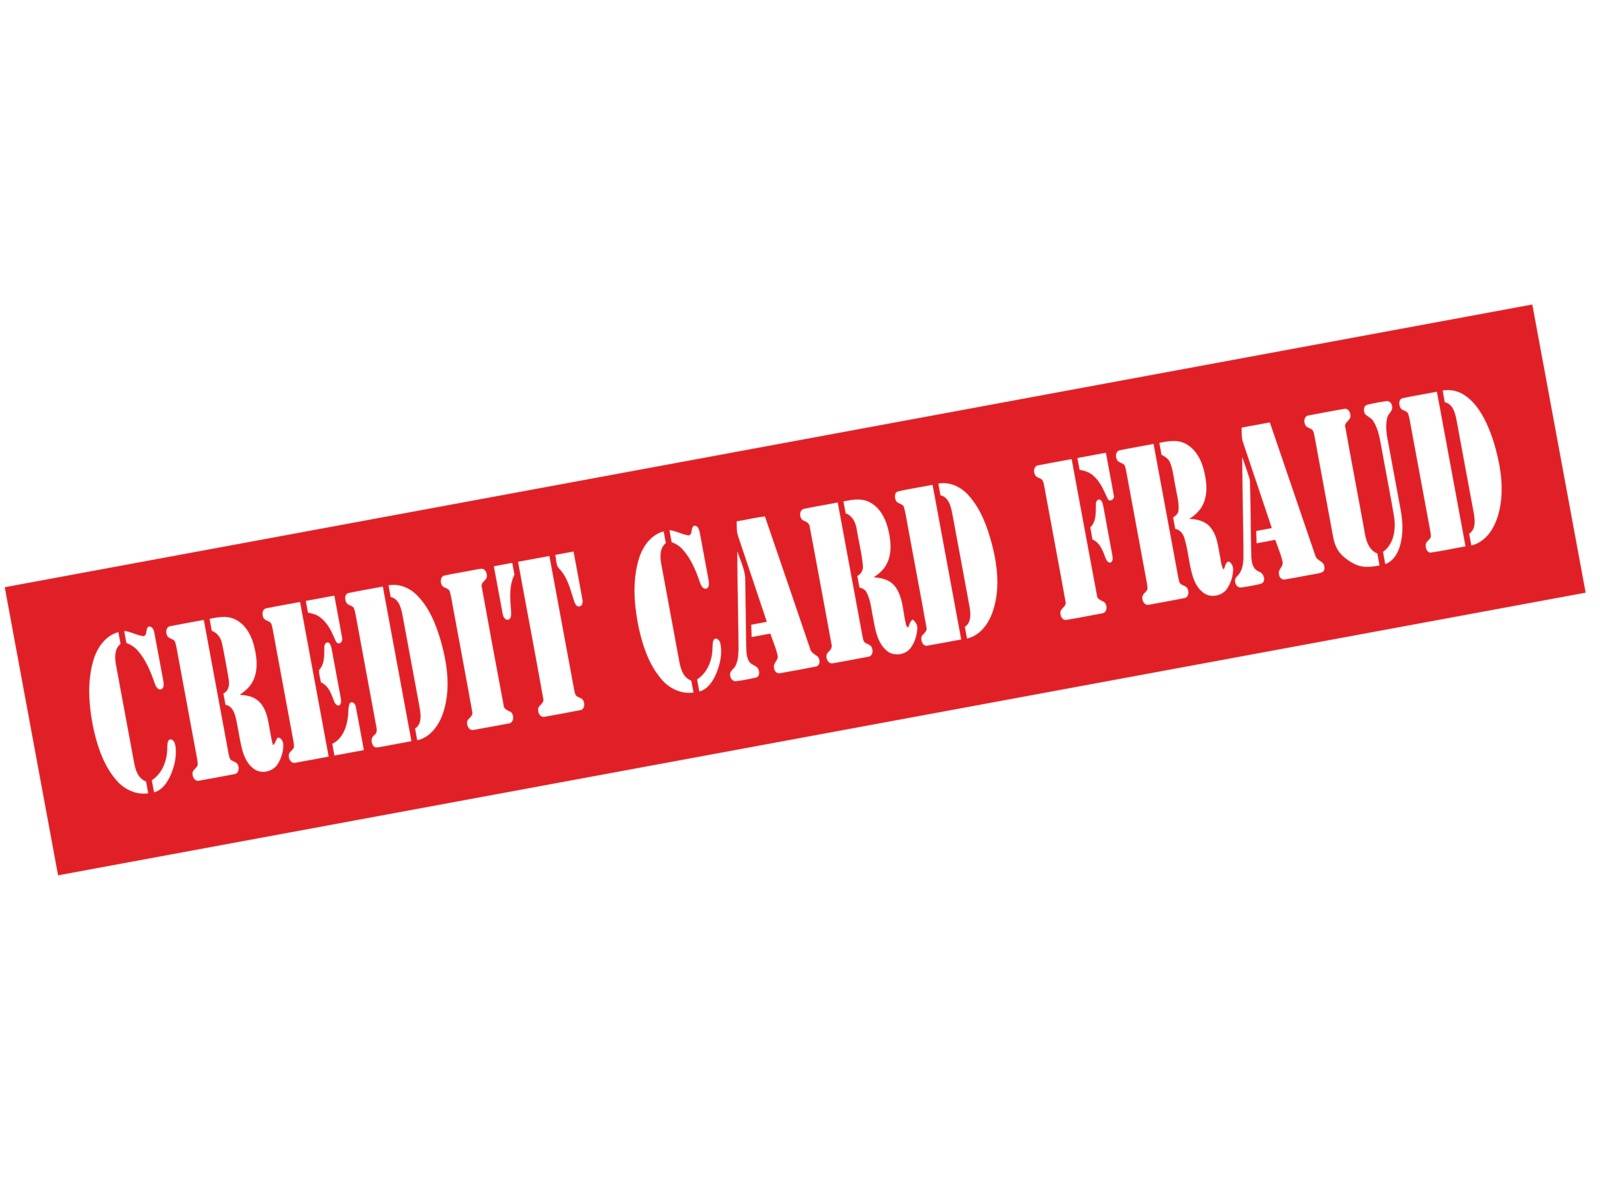 Credit card fraud by carmenbobo